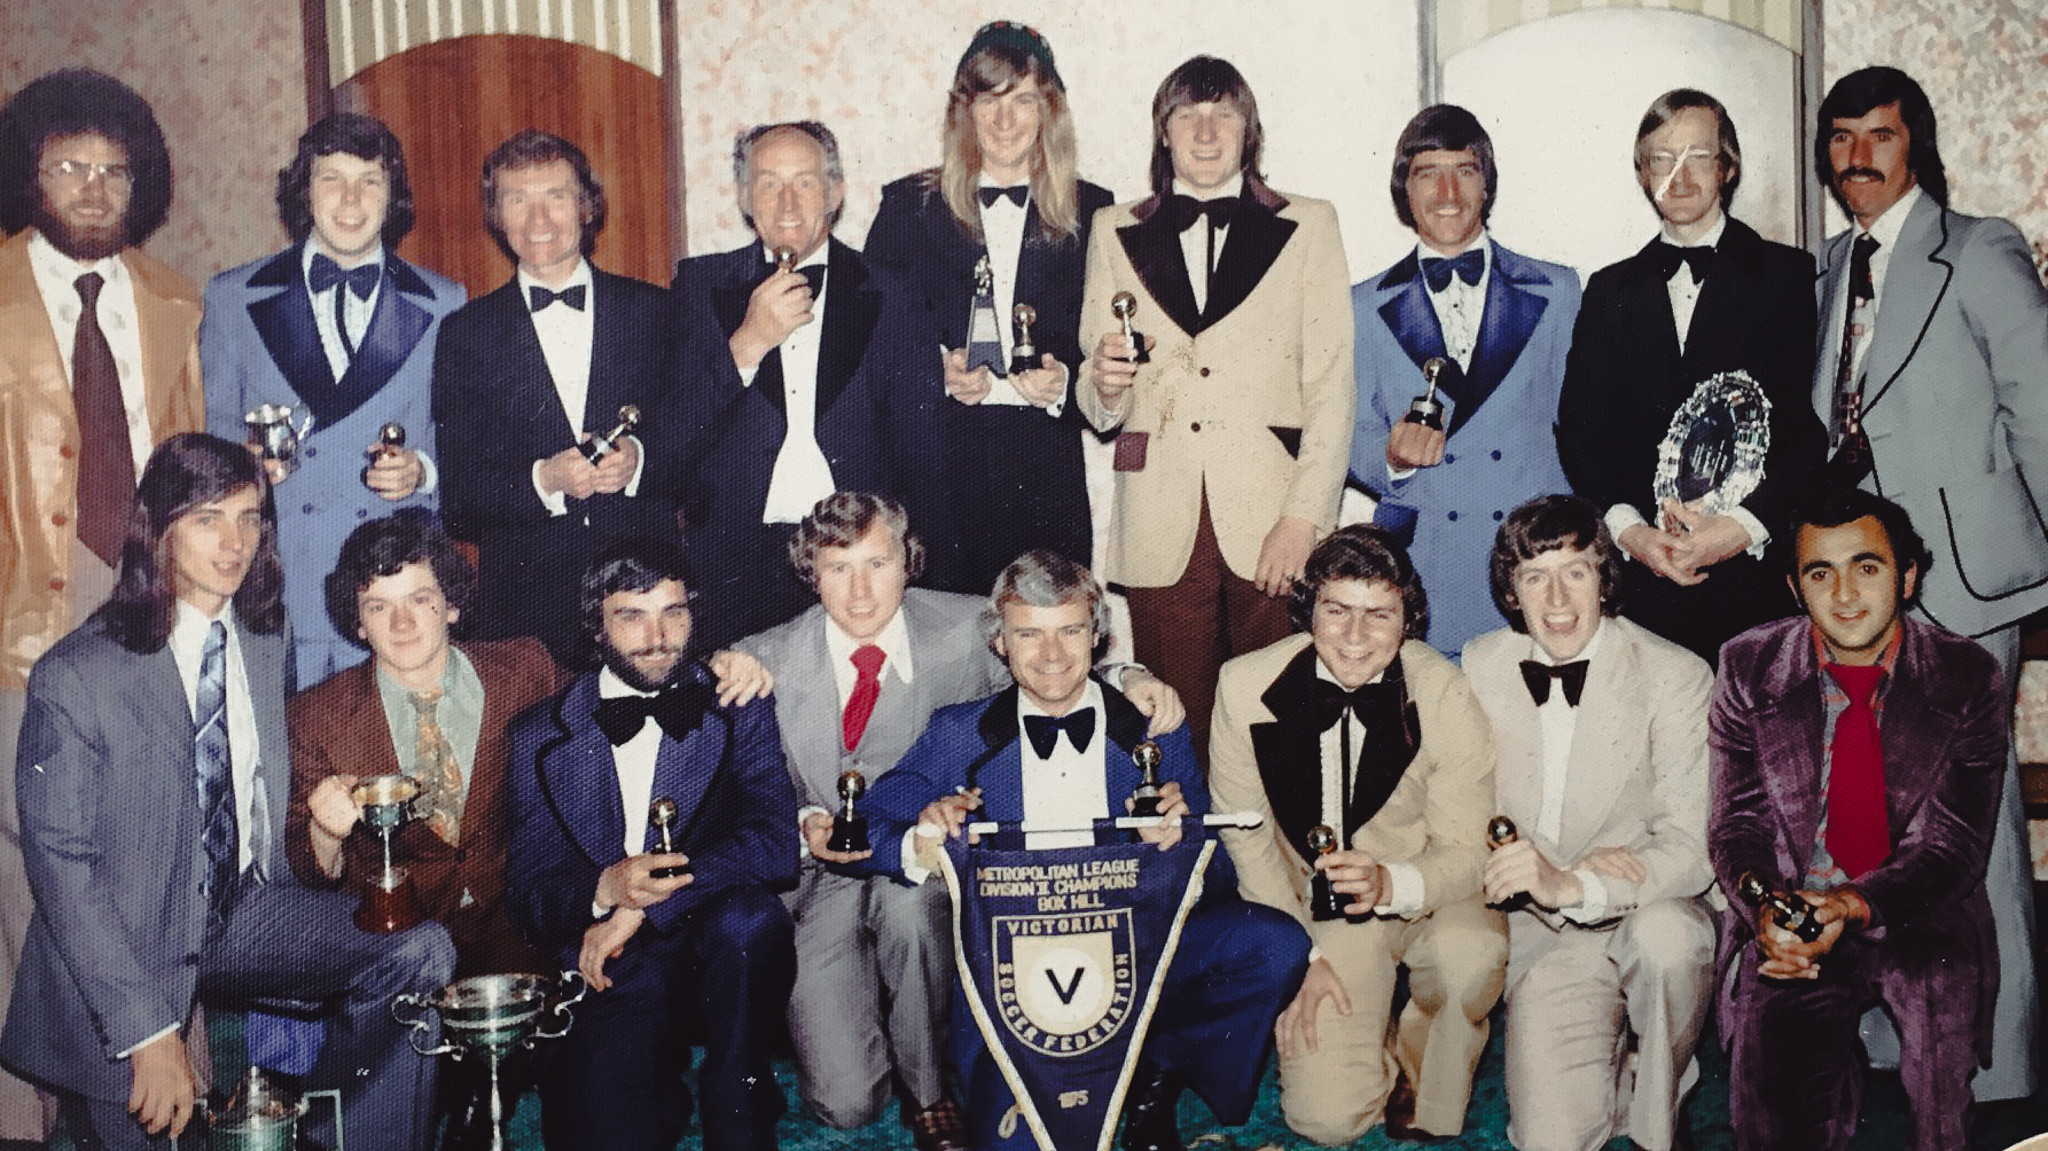 Metropolitan League Division Two Champions 1975